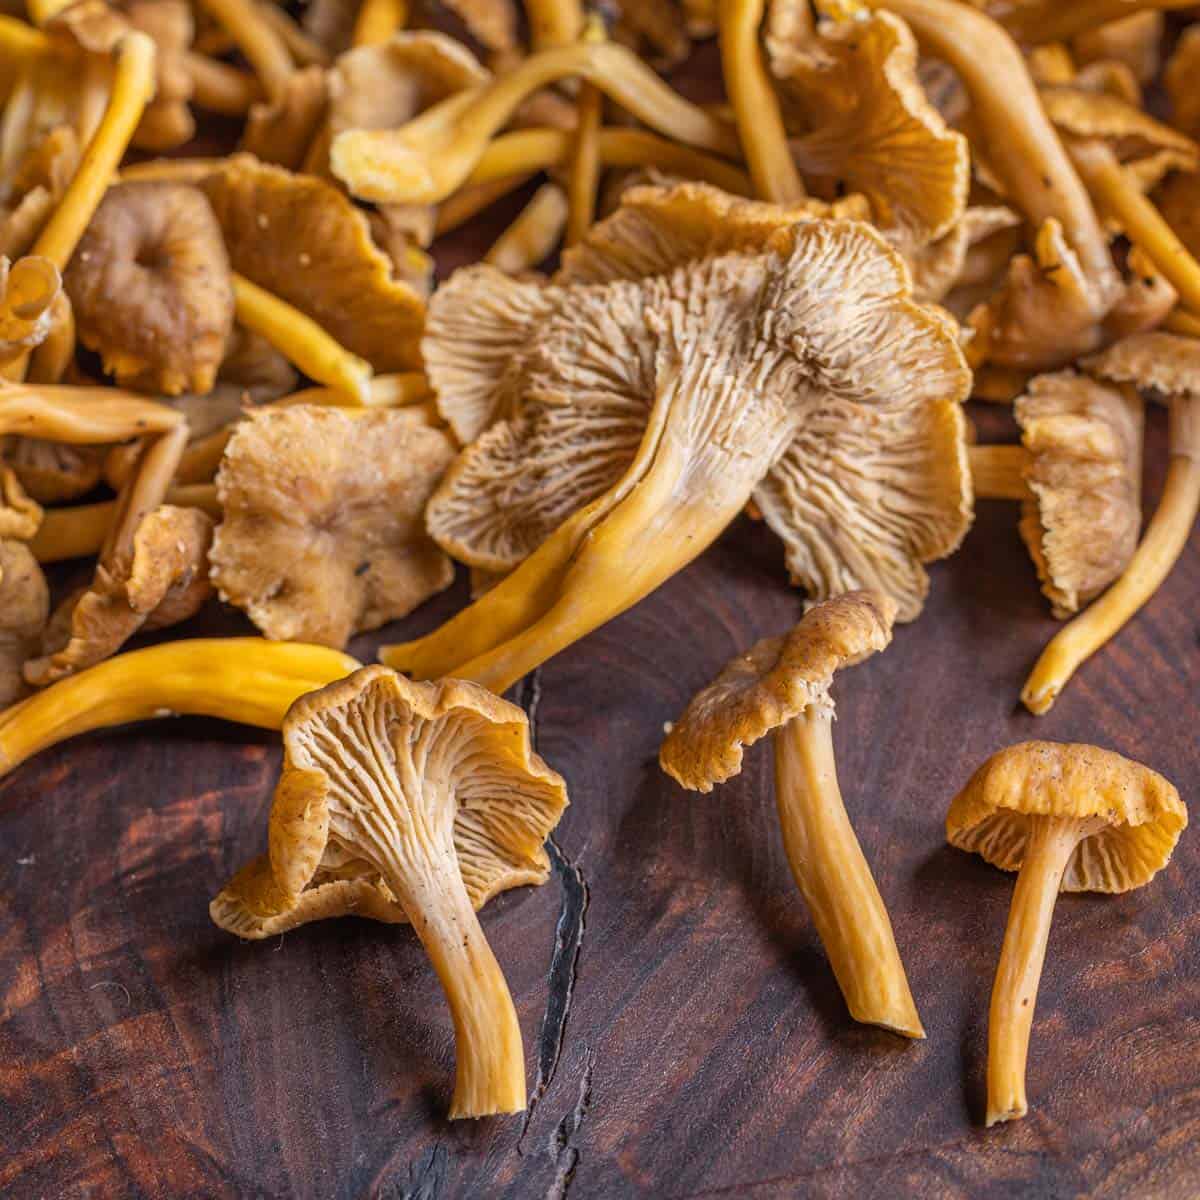 Yellowfoot chanterelle mushrooms or winter chanterelles